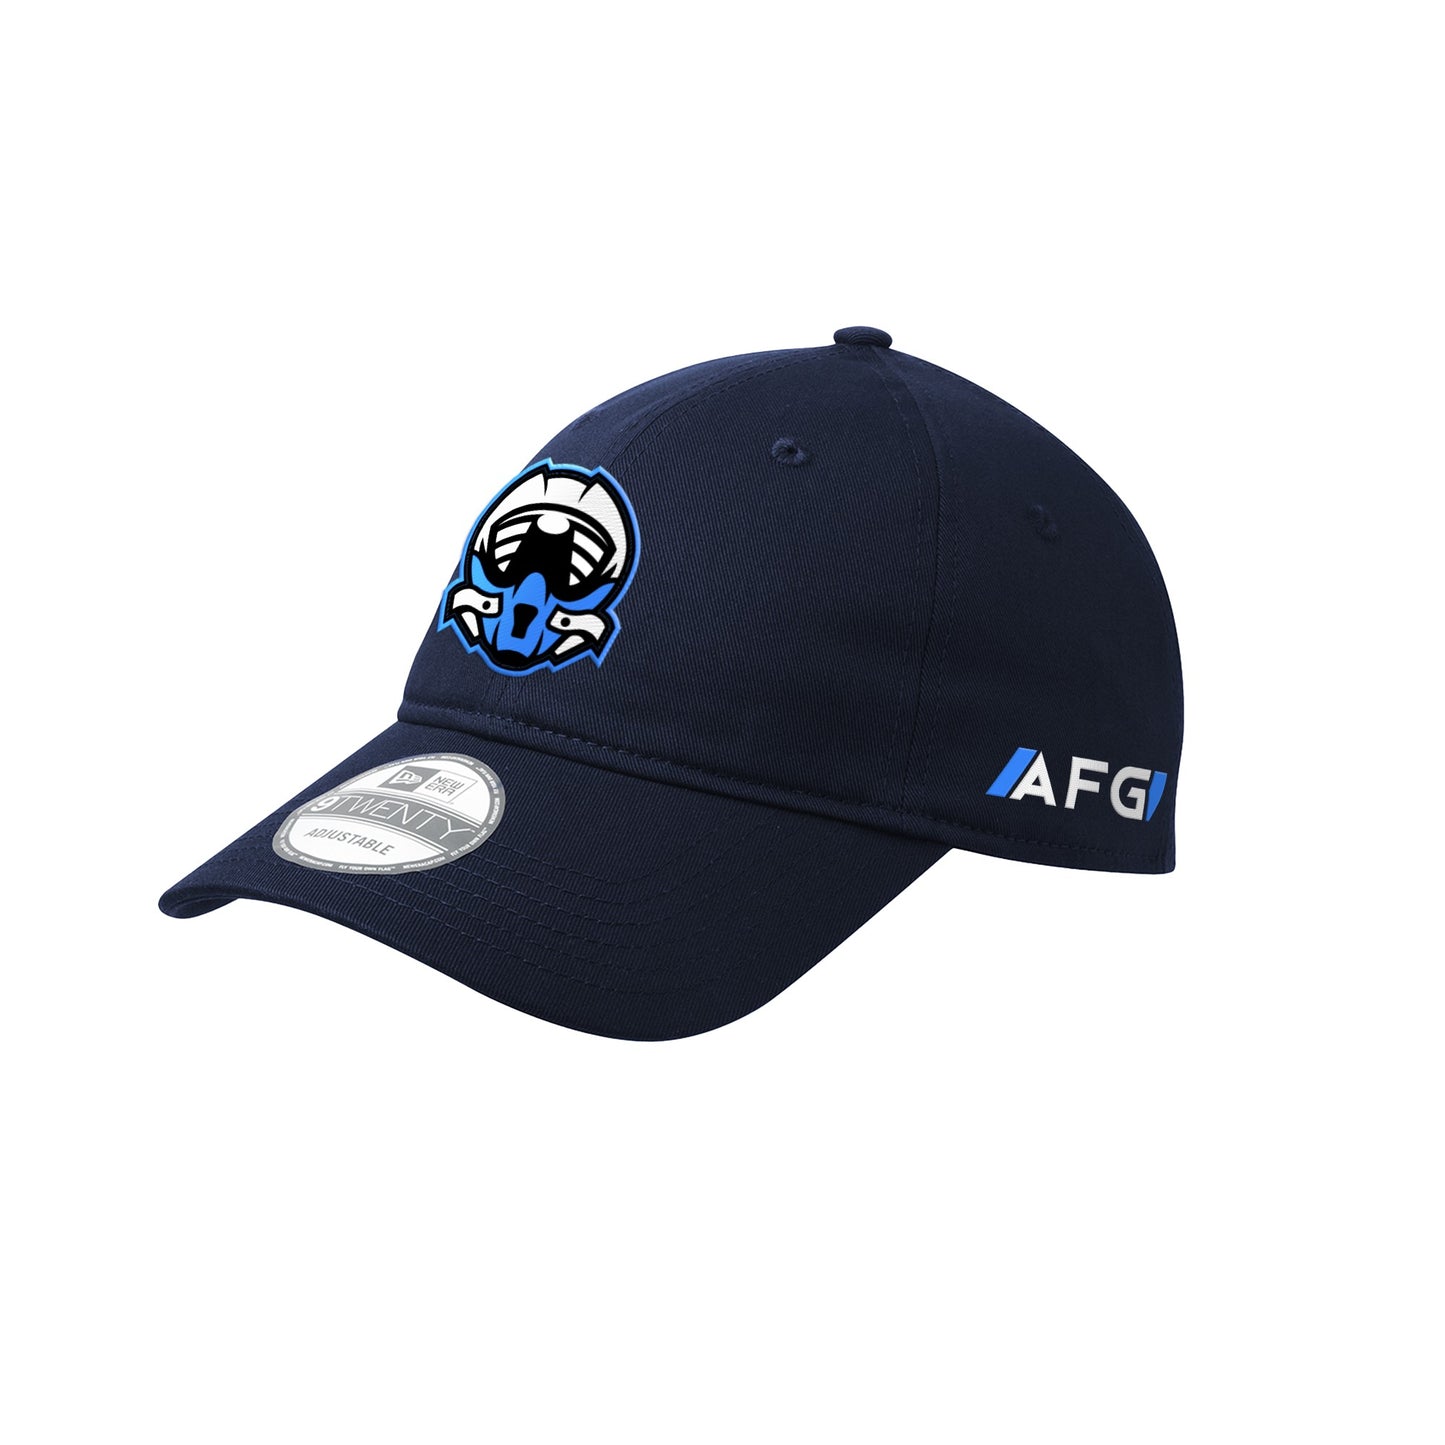 AFG Embroidered Dad Hat